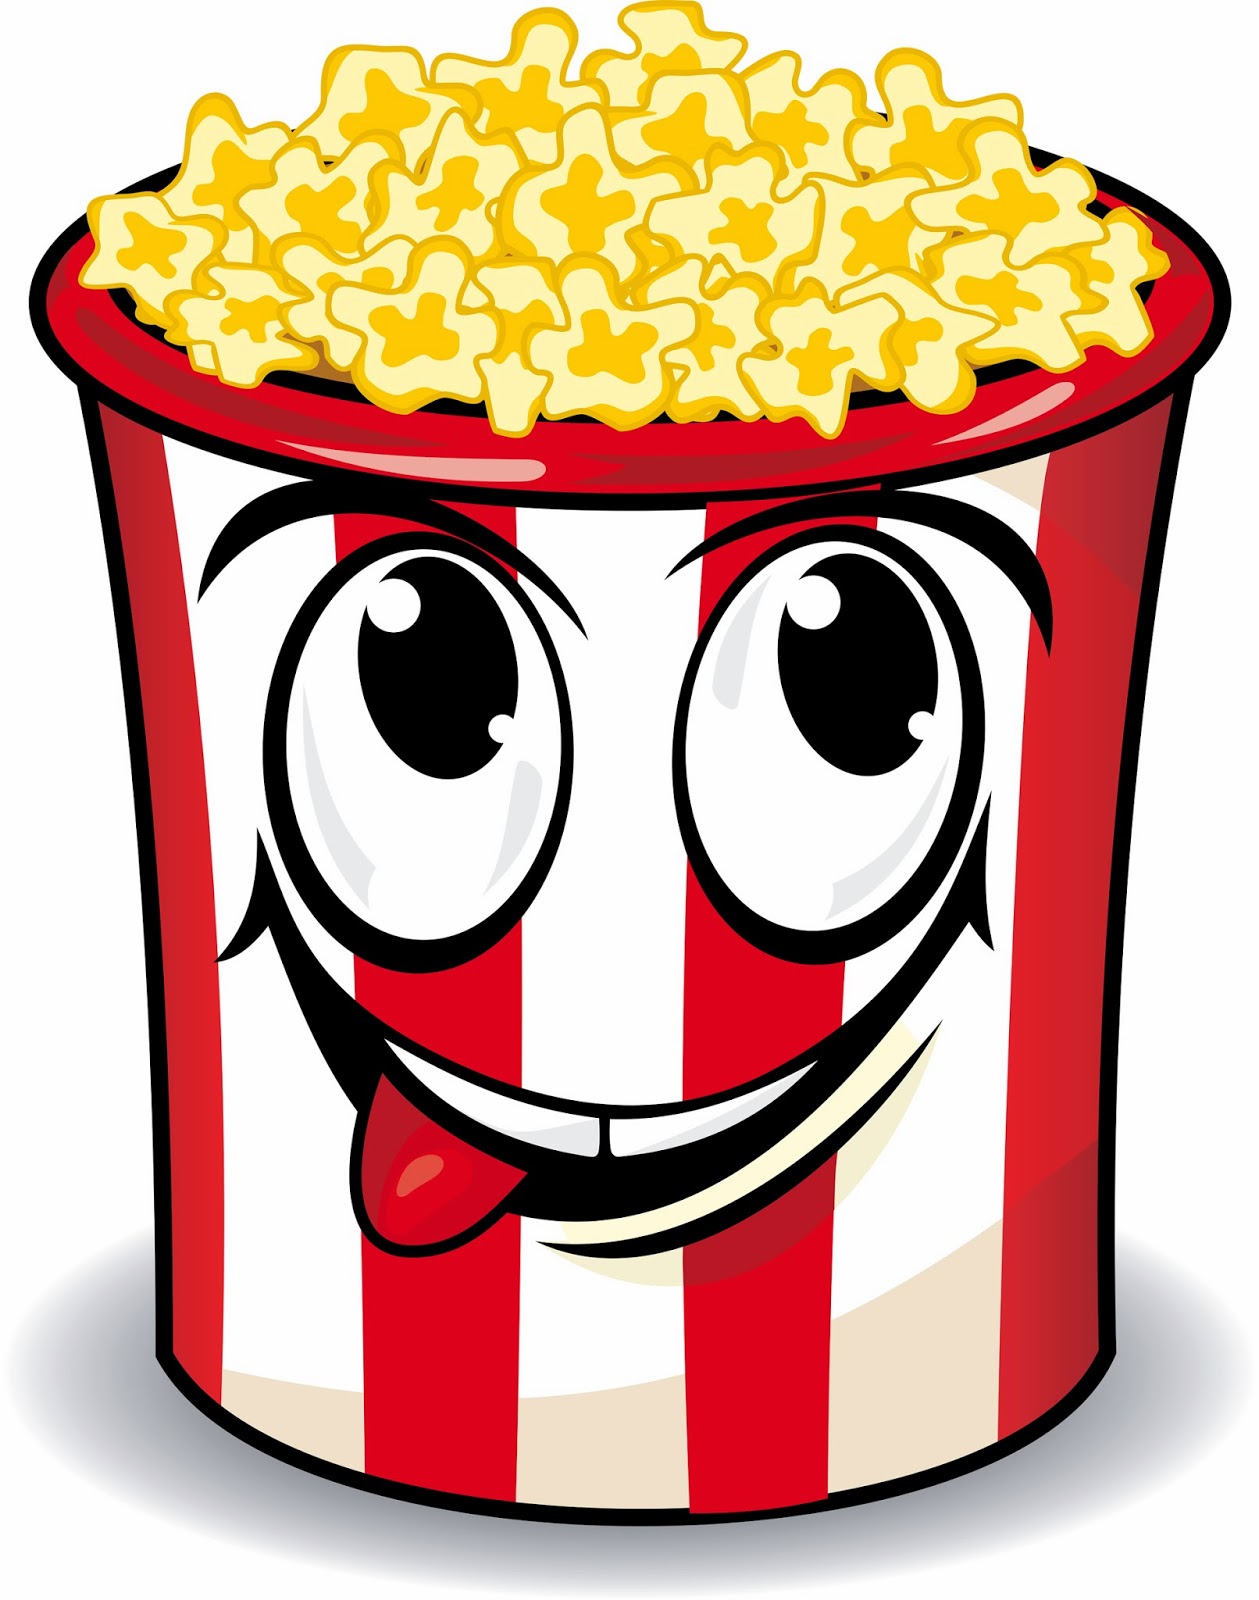 Popcorn Clipart - 47 cliparts